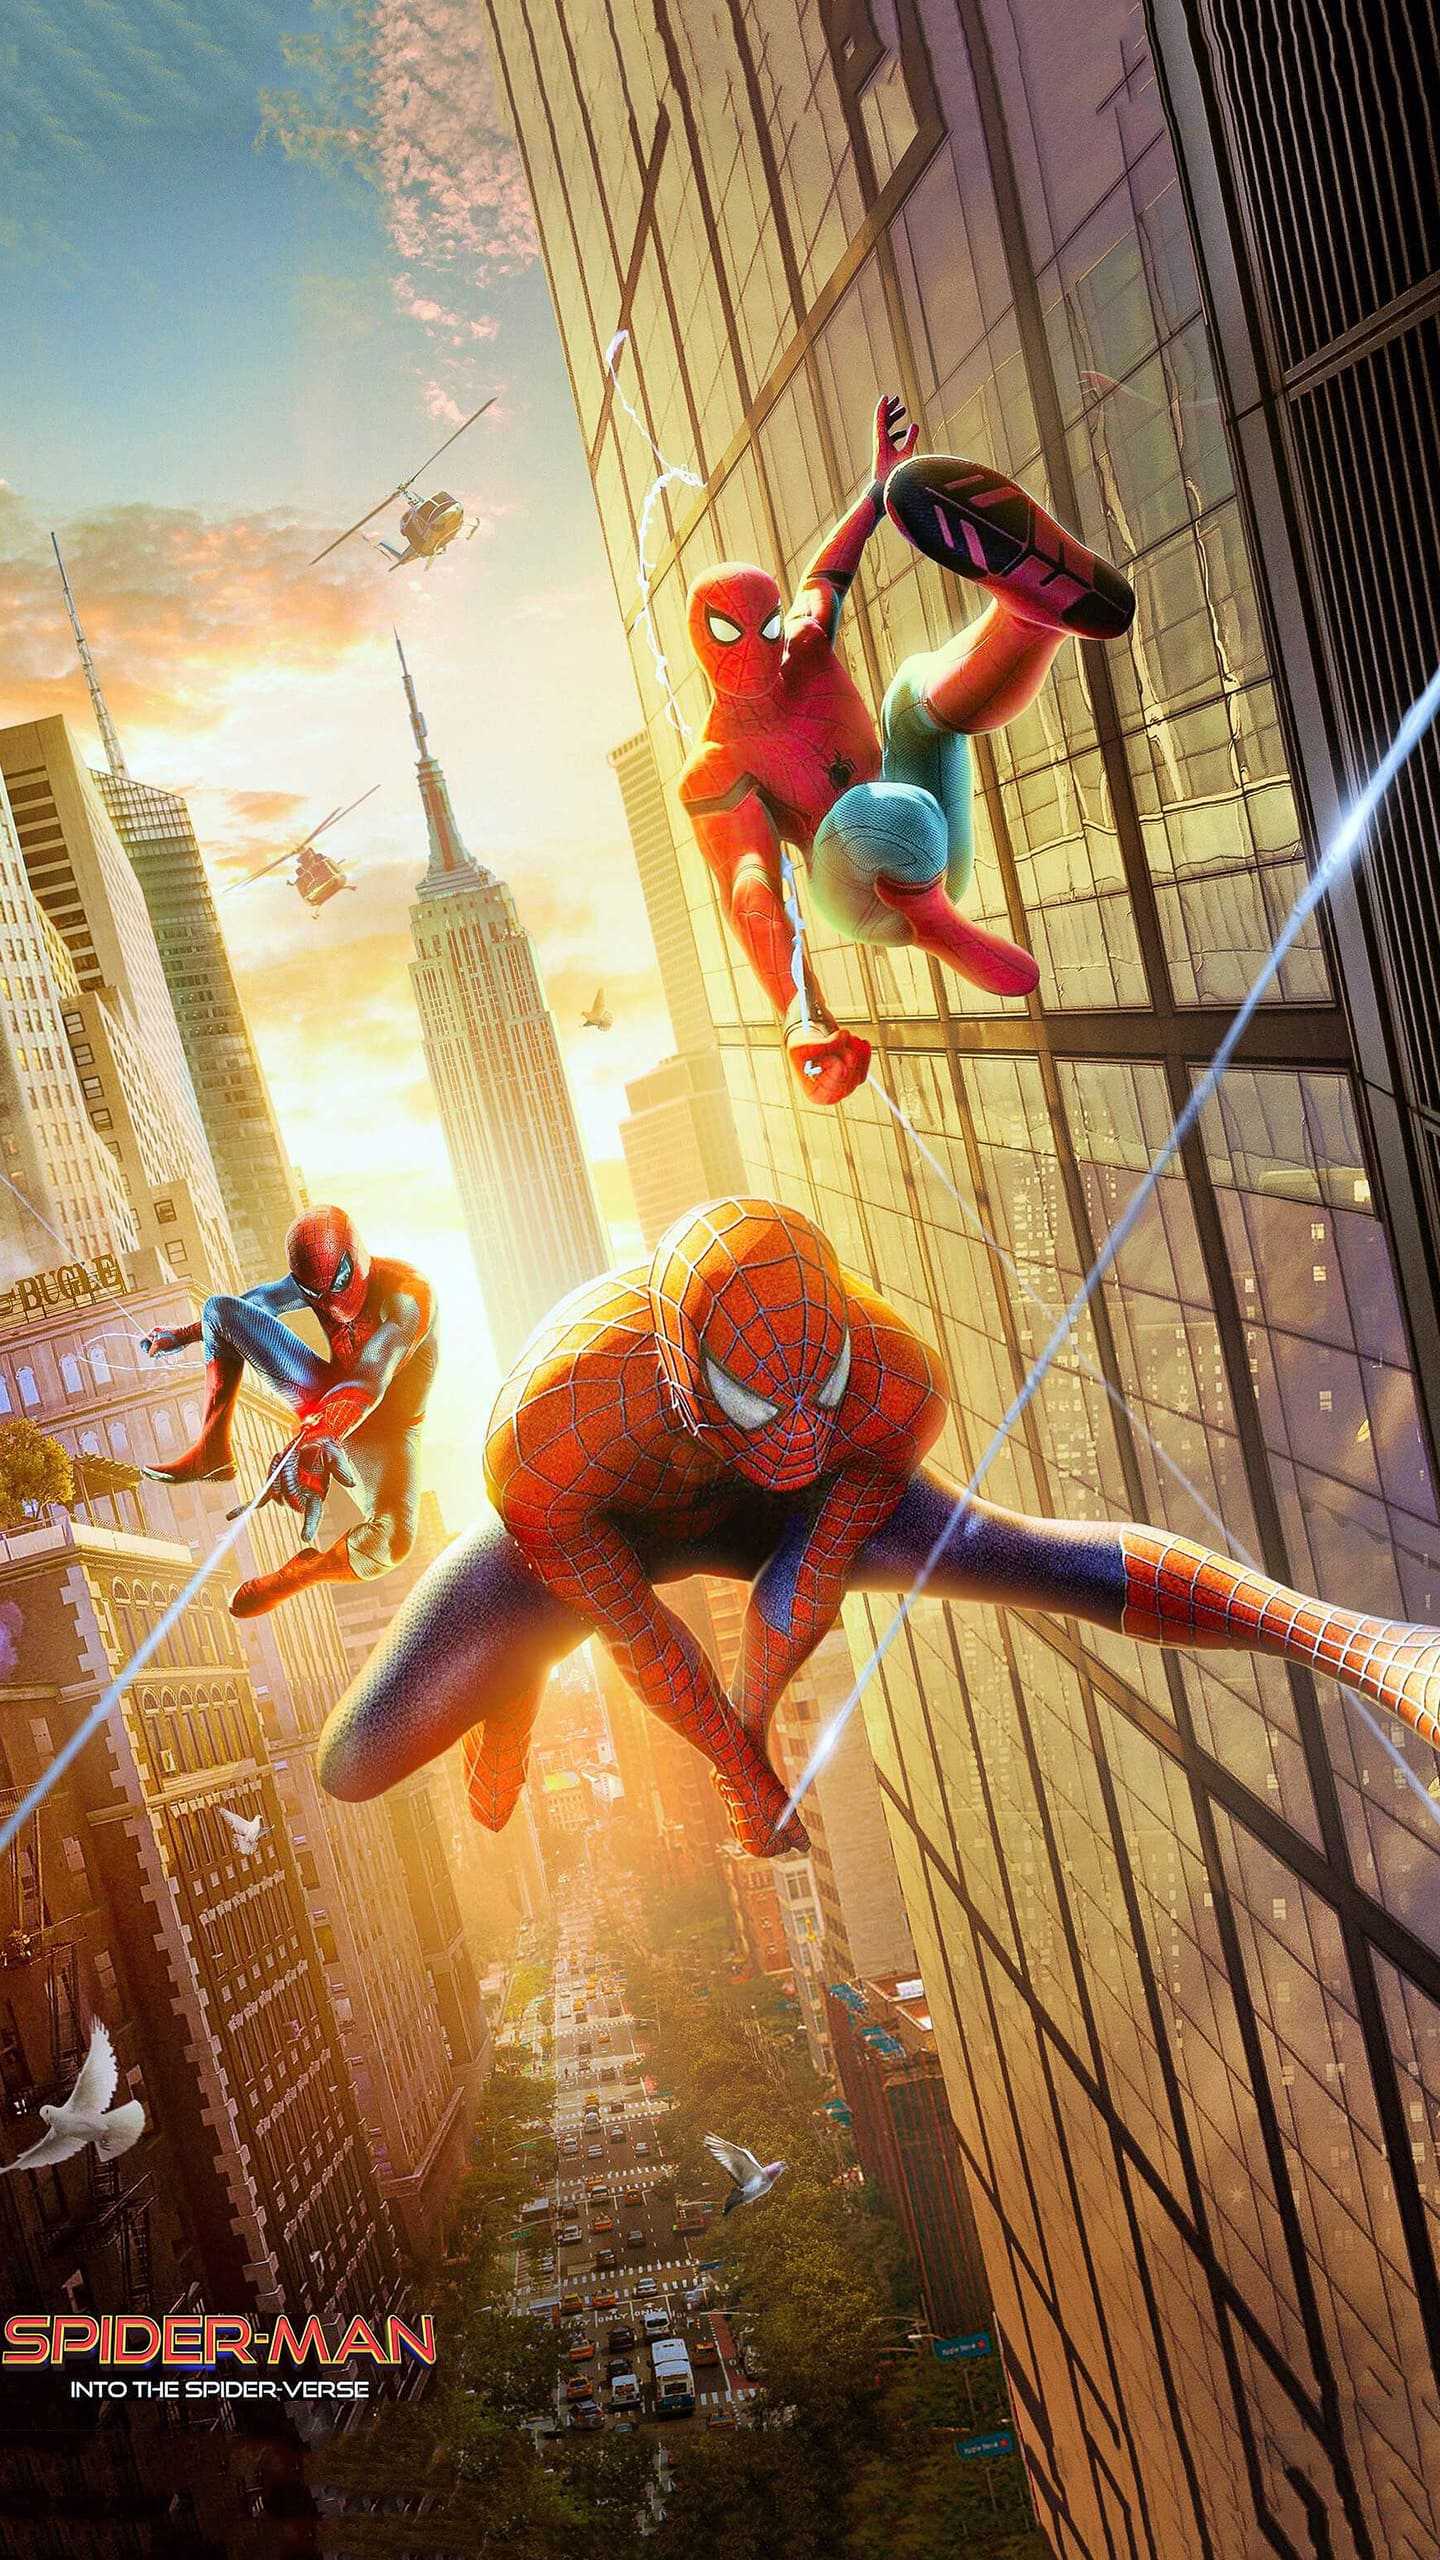 Spider-Man: Bạn là fan của siêu anh hùng Spider-Man và đang tìm kiếm hình nền phù hợp cho màn hình điện thoại của mình? Hôm nay, chúng ta có ba bức hình nền tuyệt đẹp về Spider-Man để bạn lựa chọn, tải về và sử dụng ngay thôi!